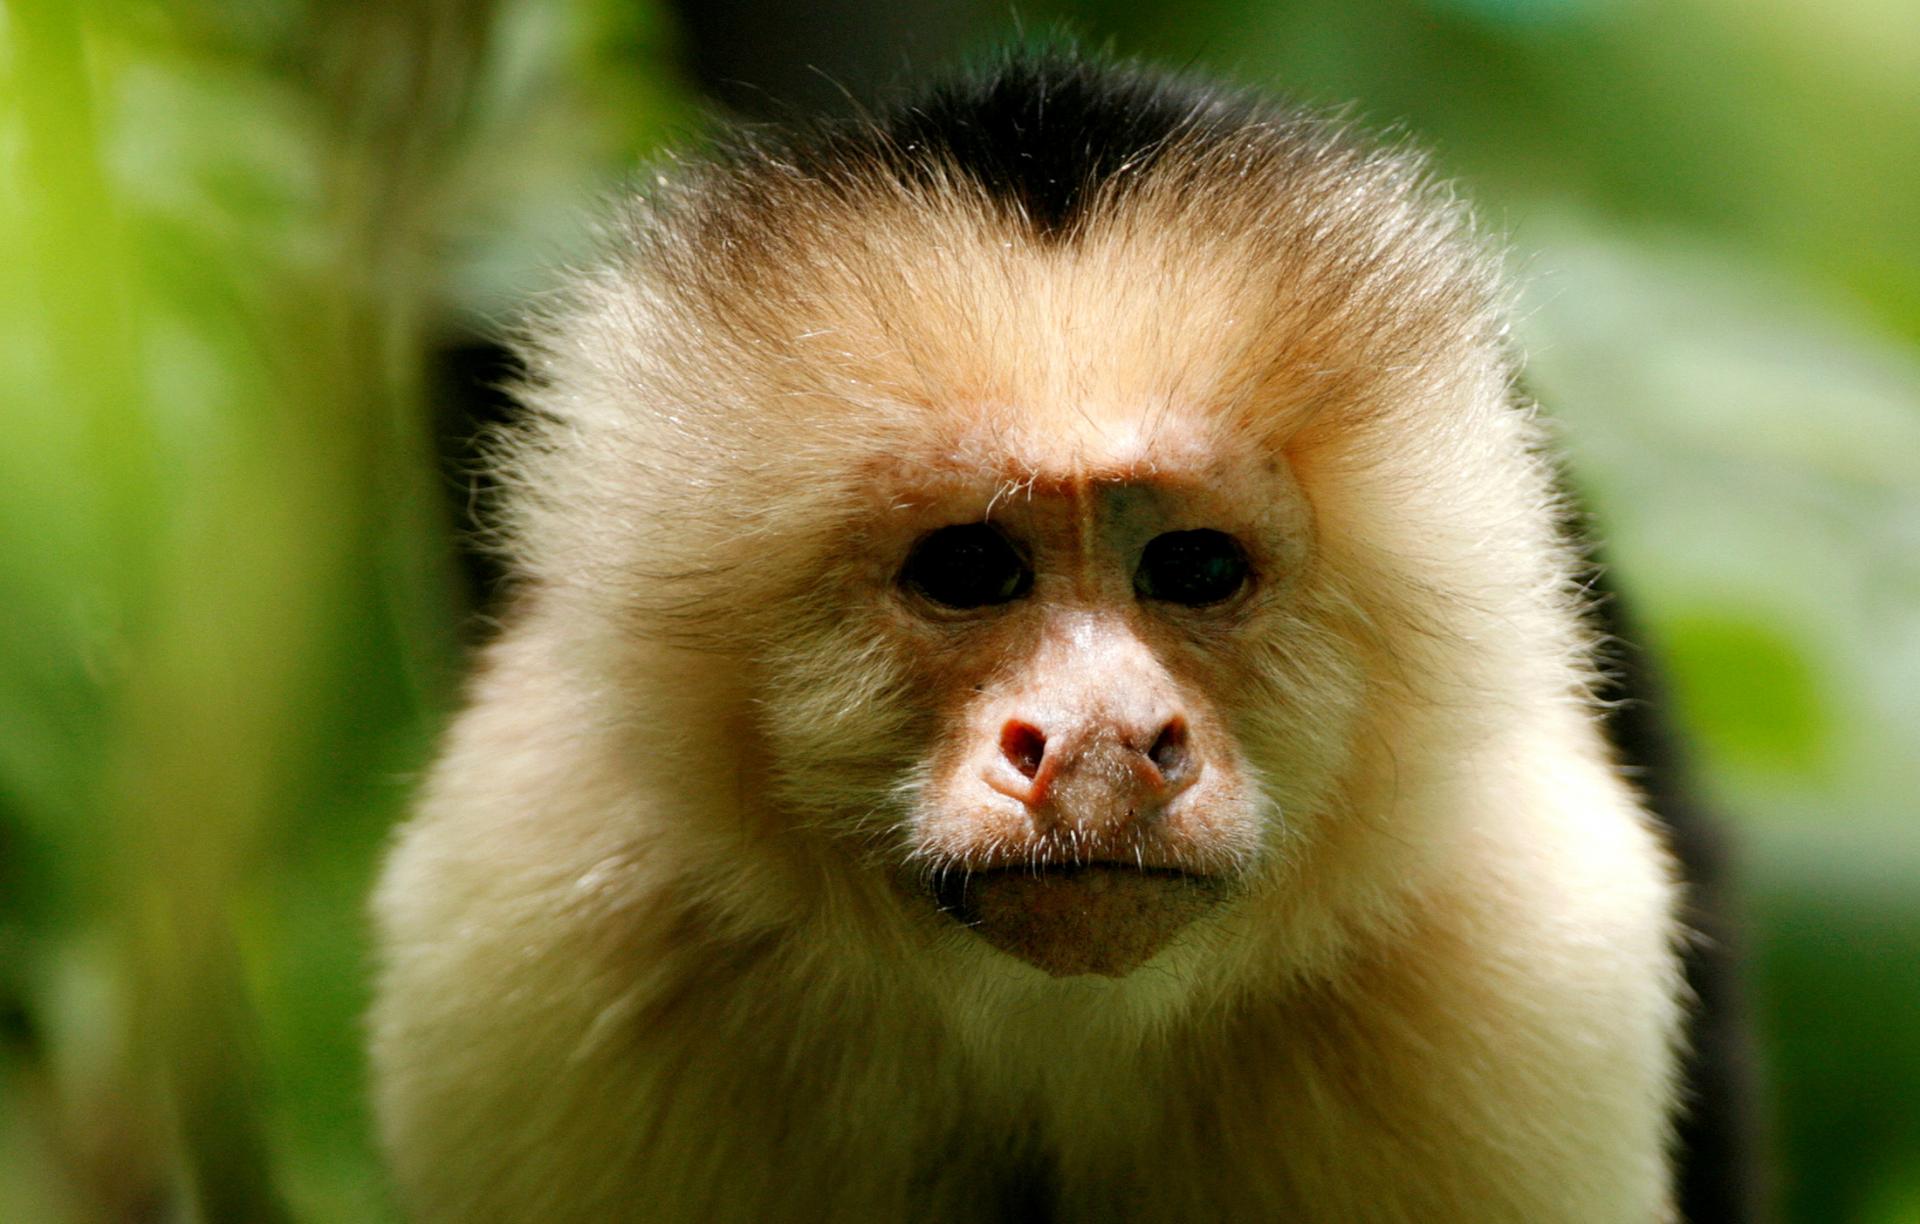 Globálna sieť sadistov sa zabávala týraním mláďat opíc. Predbiehali sa v brutalite, videá sa dali objednať